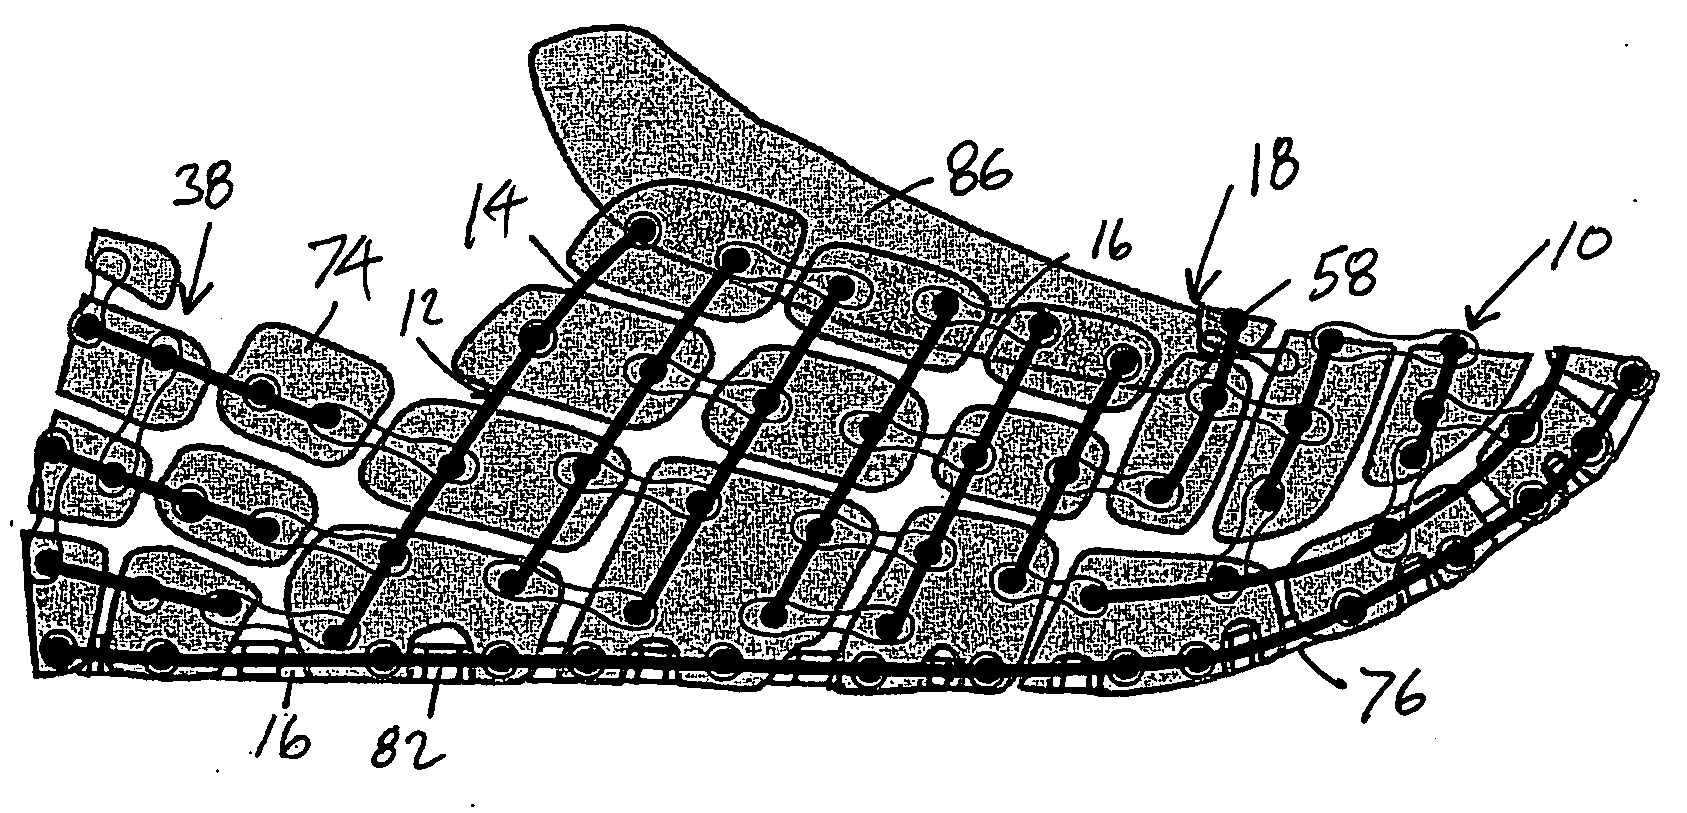 Article of footwear formed of multiple links